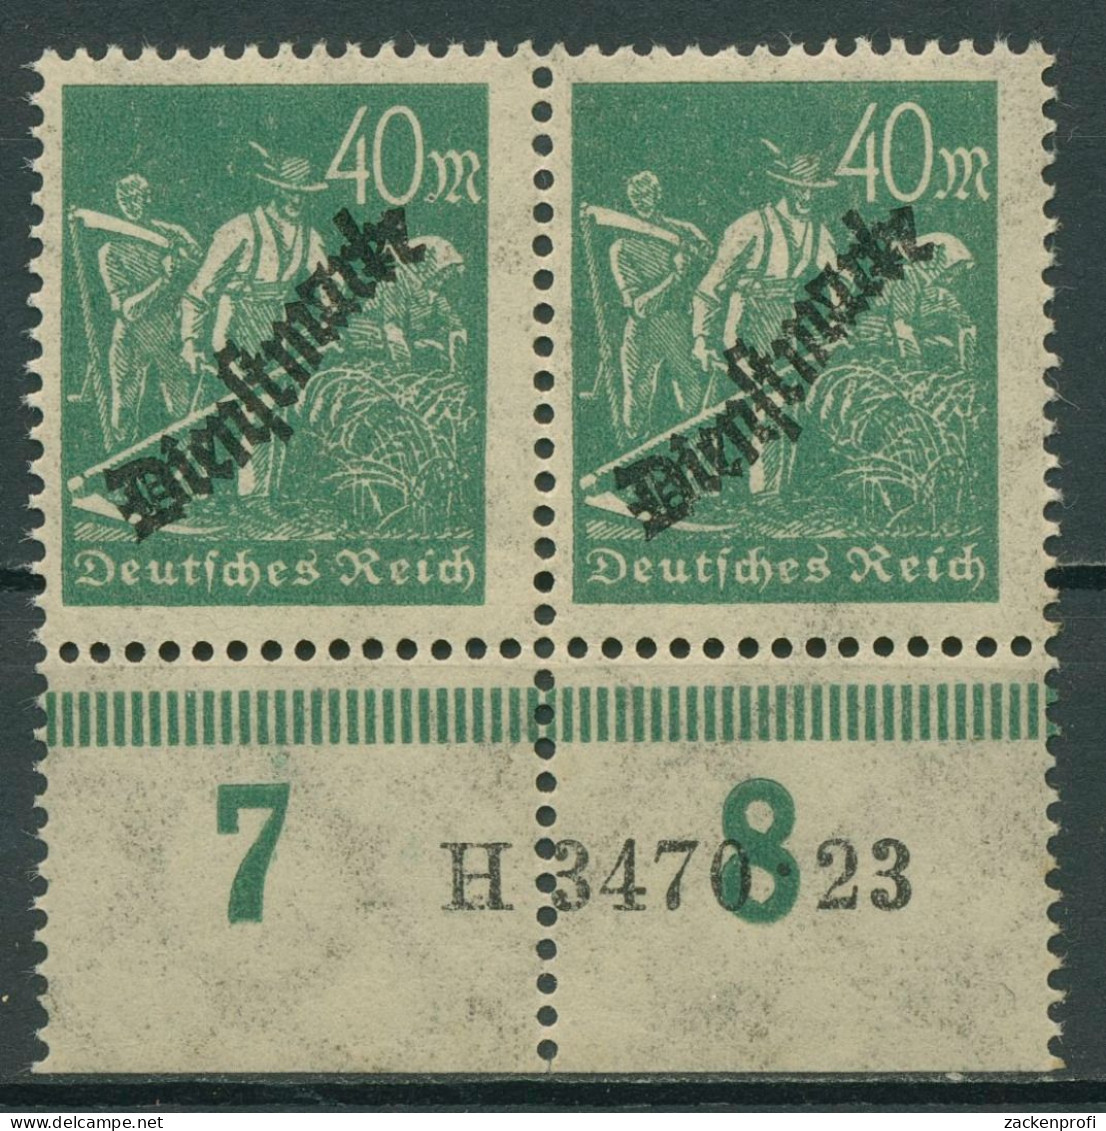 Deutsches Reich Dienstmarke 1923 Hausauftrags-Nr. D 77 A HAN 3470.23 Postfrisch - Servizio